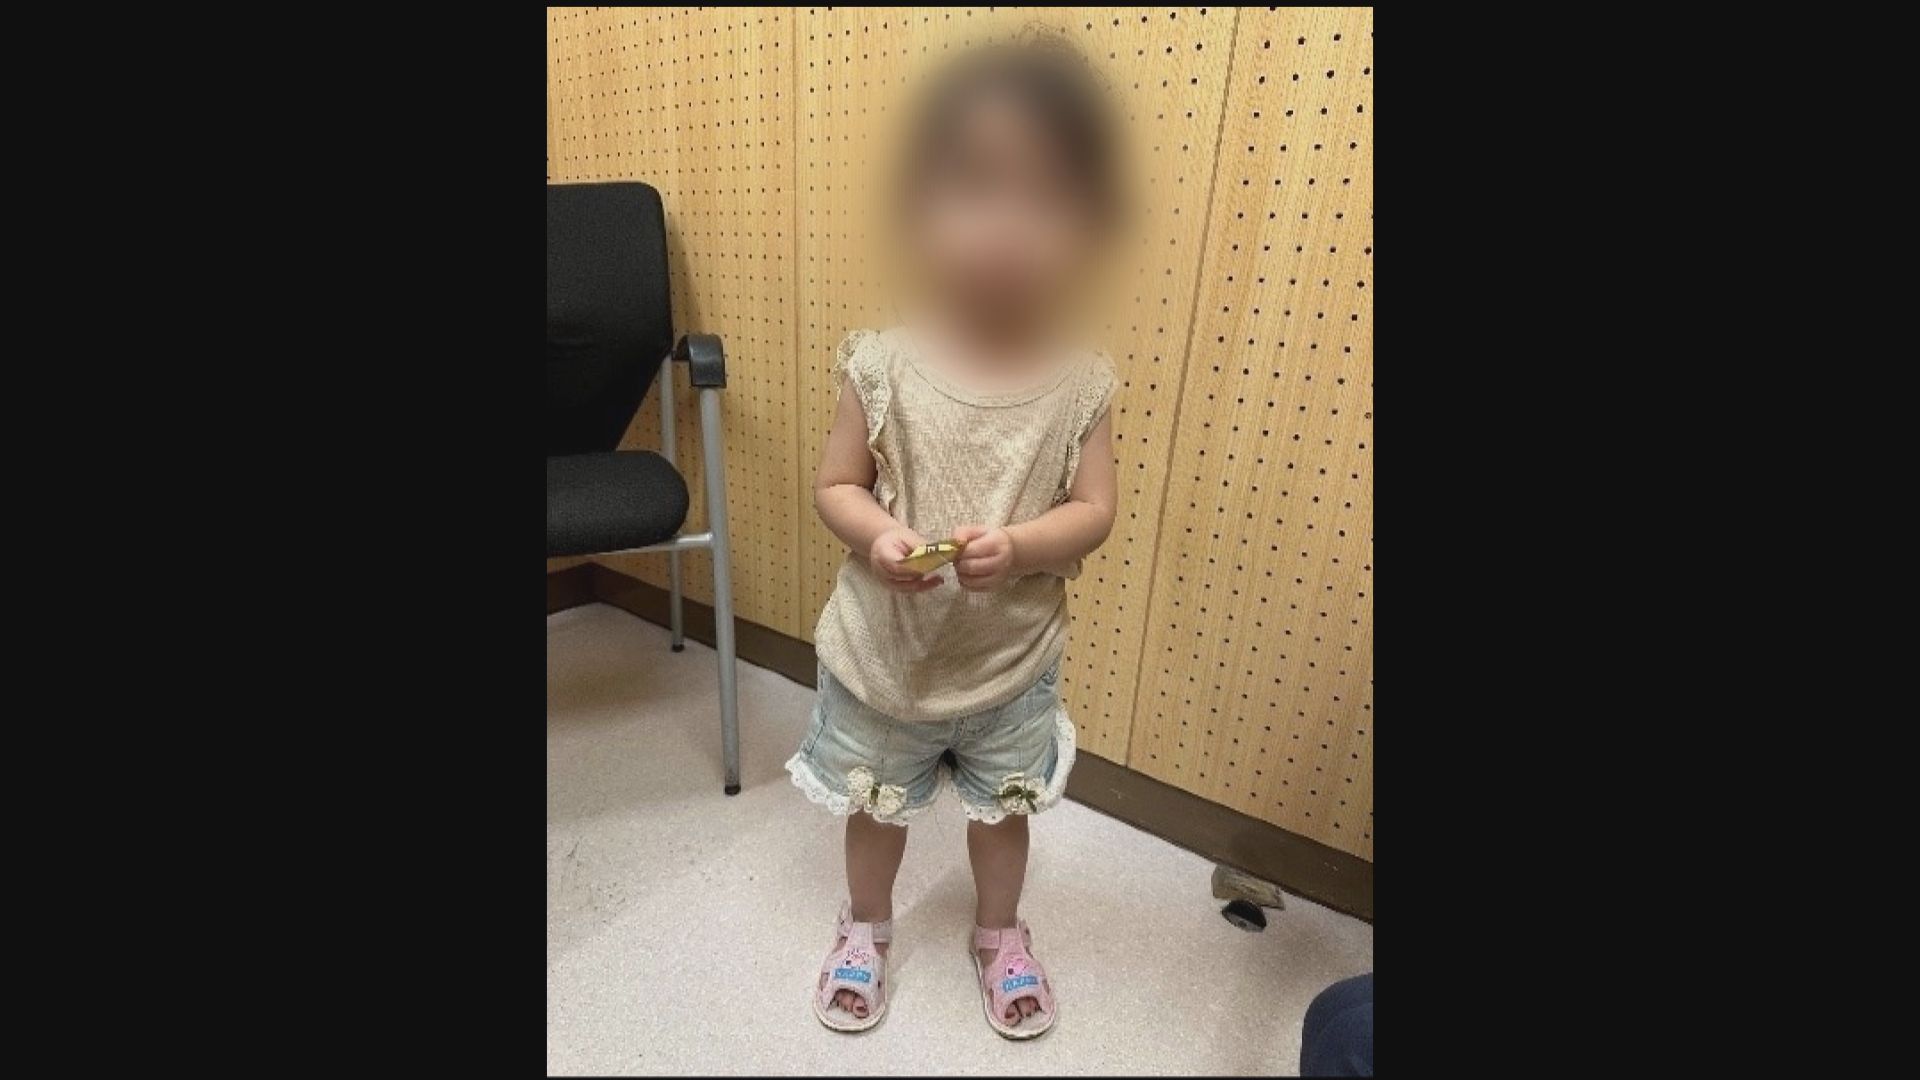 兩歲女童疑被遺棄 警拘31歲母親涉虐兒